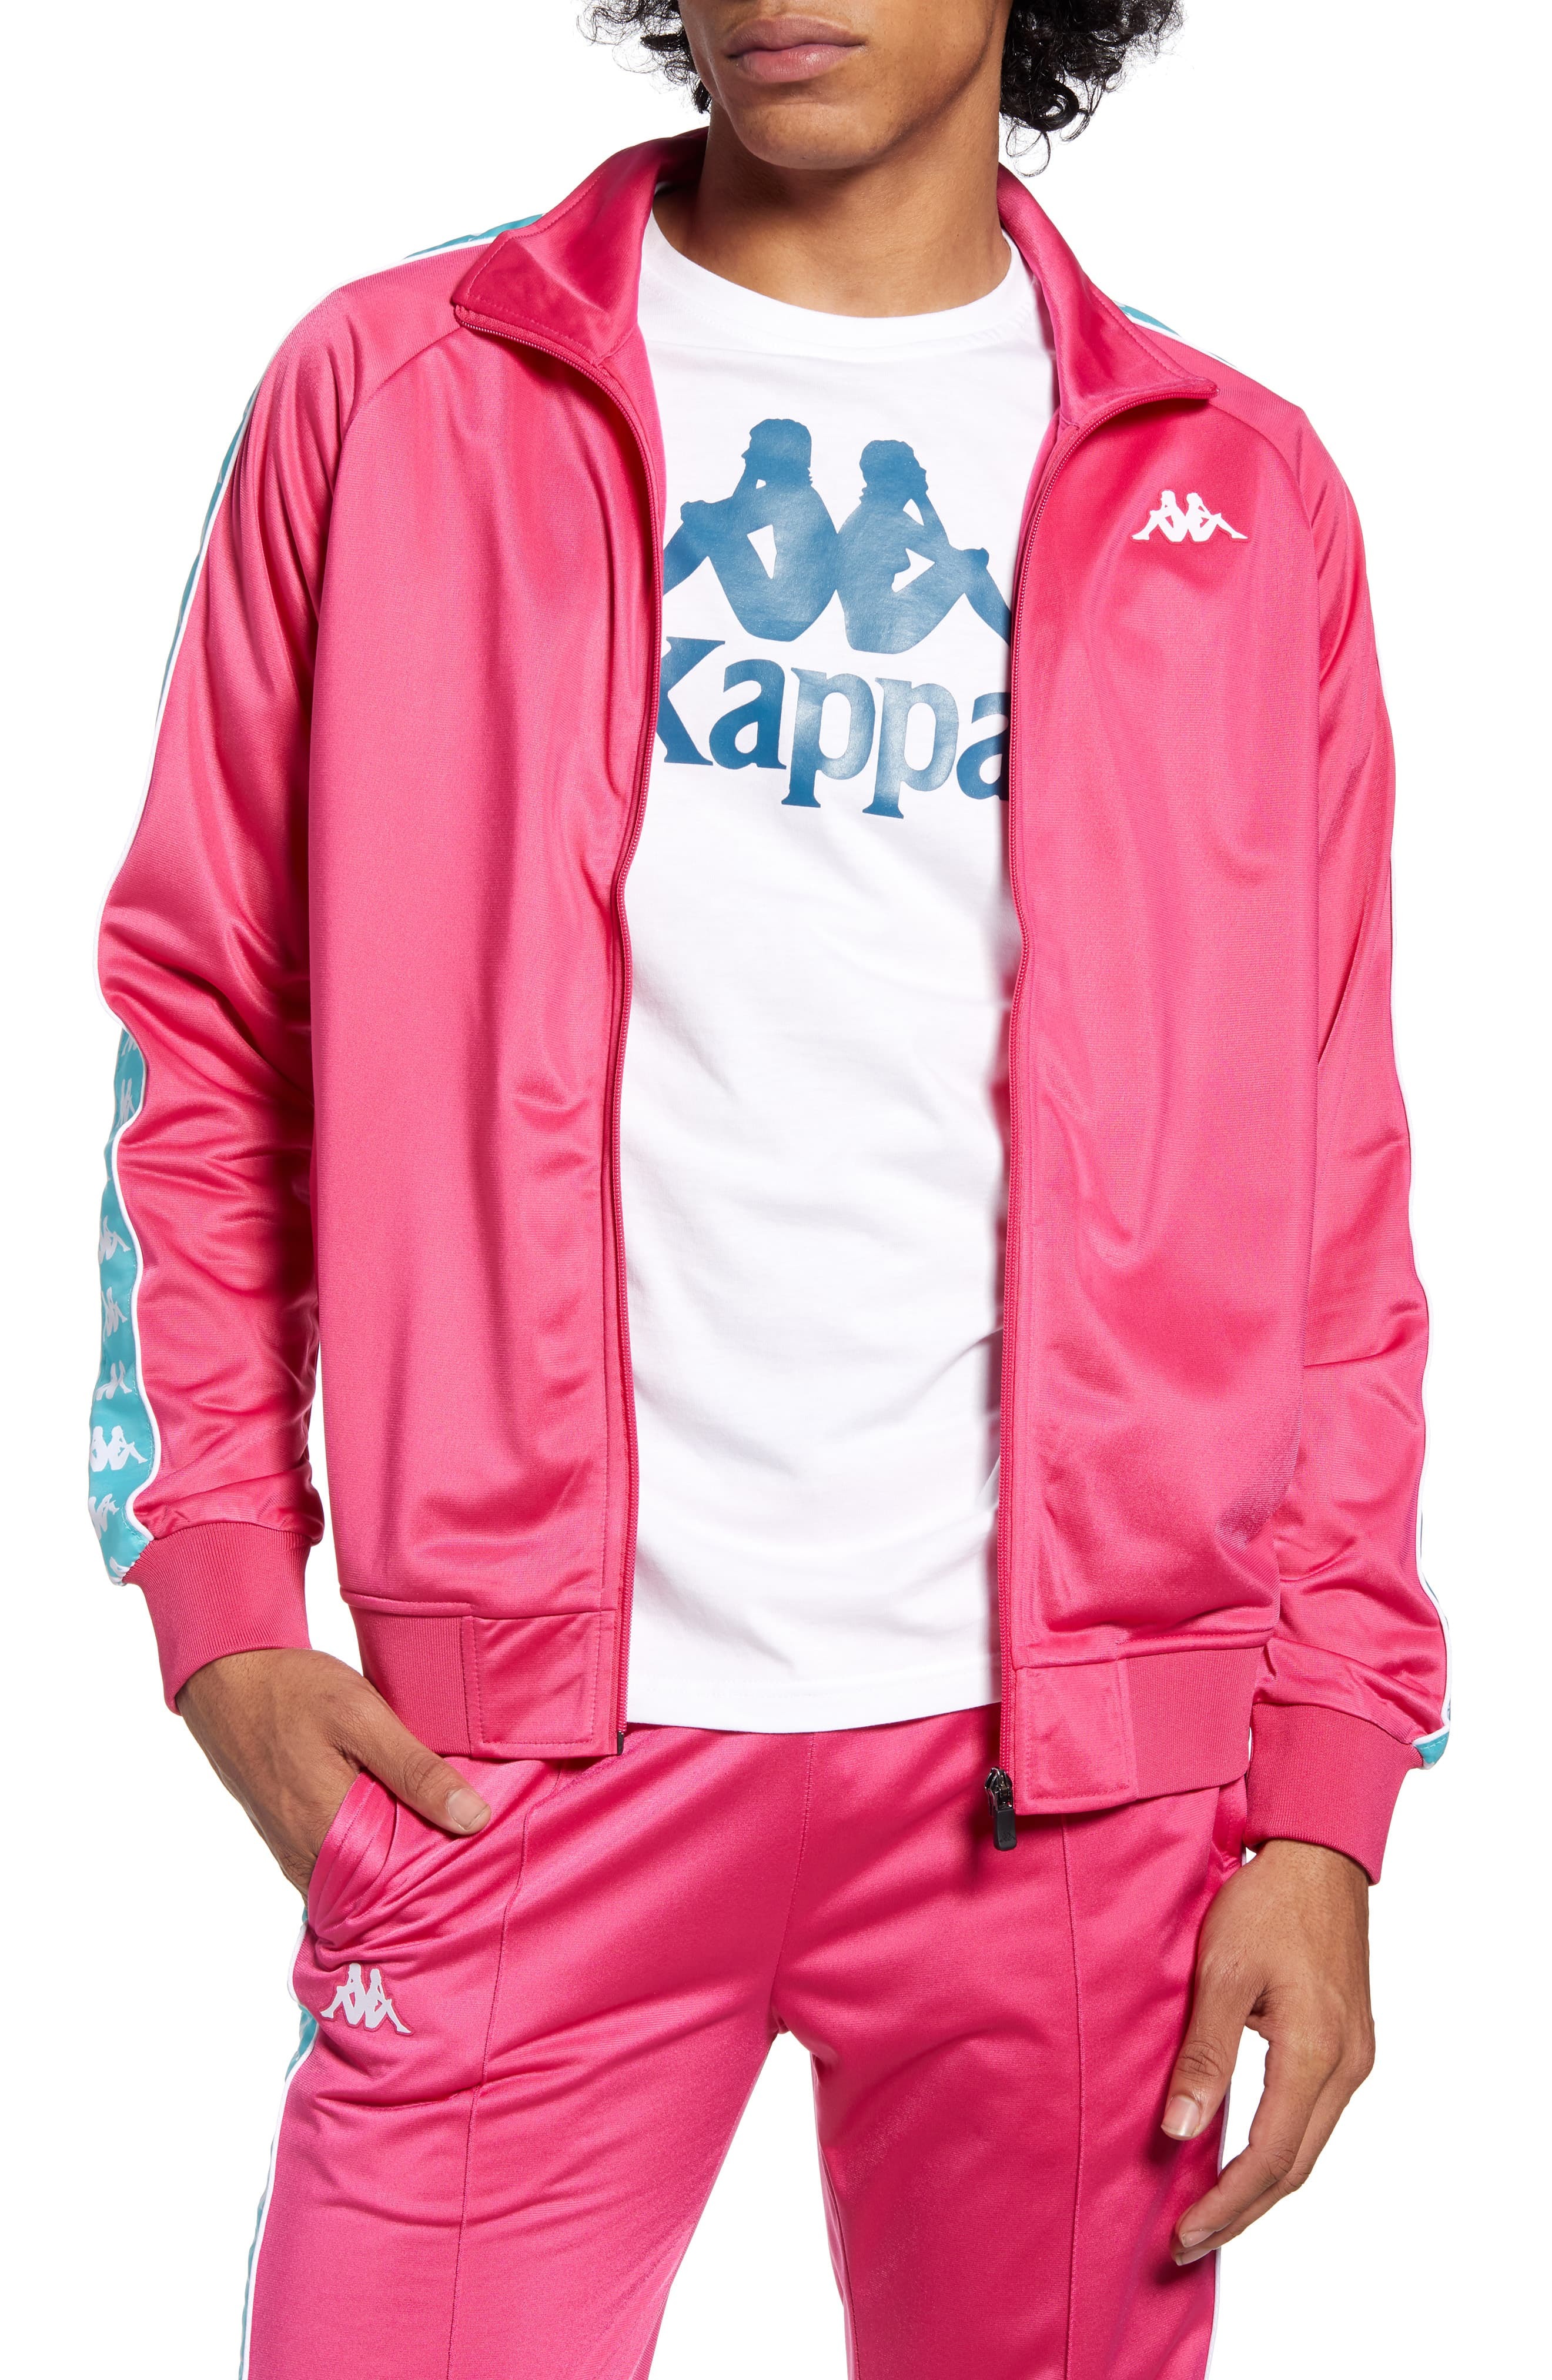 light pink kappa jacket